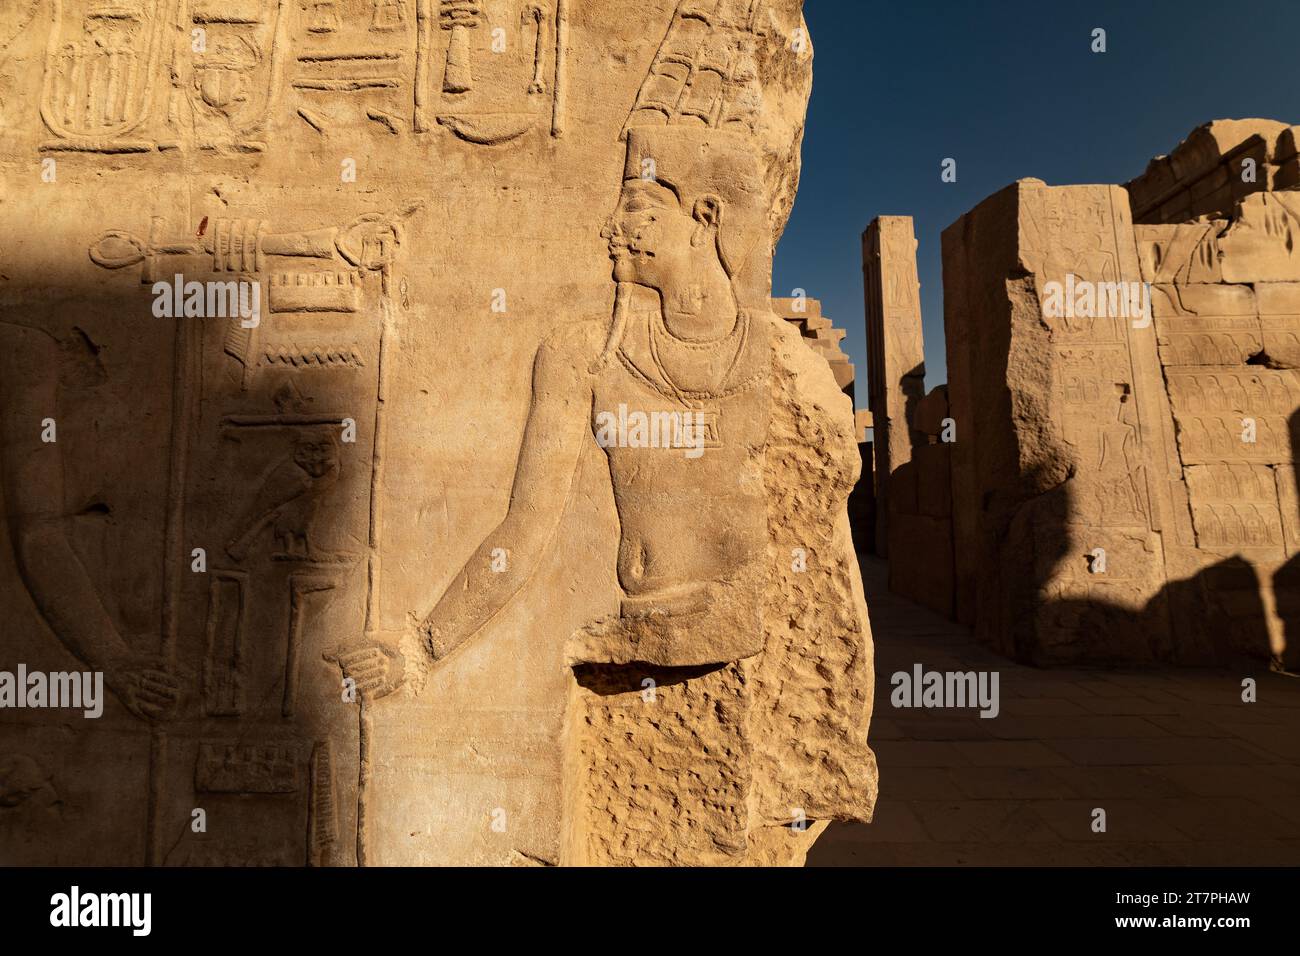 Hieroglyphenartige Reliefs an den Wänden und Säulen der antiken Ruinen des Tempelkomplexes Karnak in der ägyptischen Wüstenstadt Luxor Stockfoto